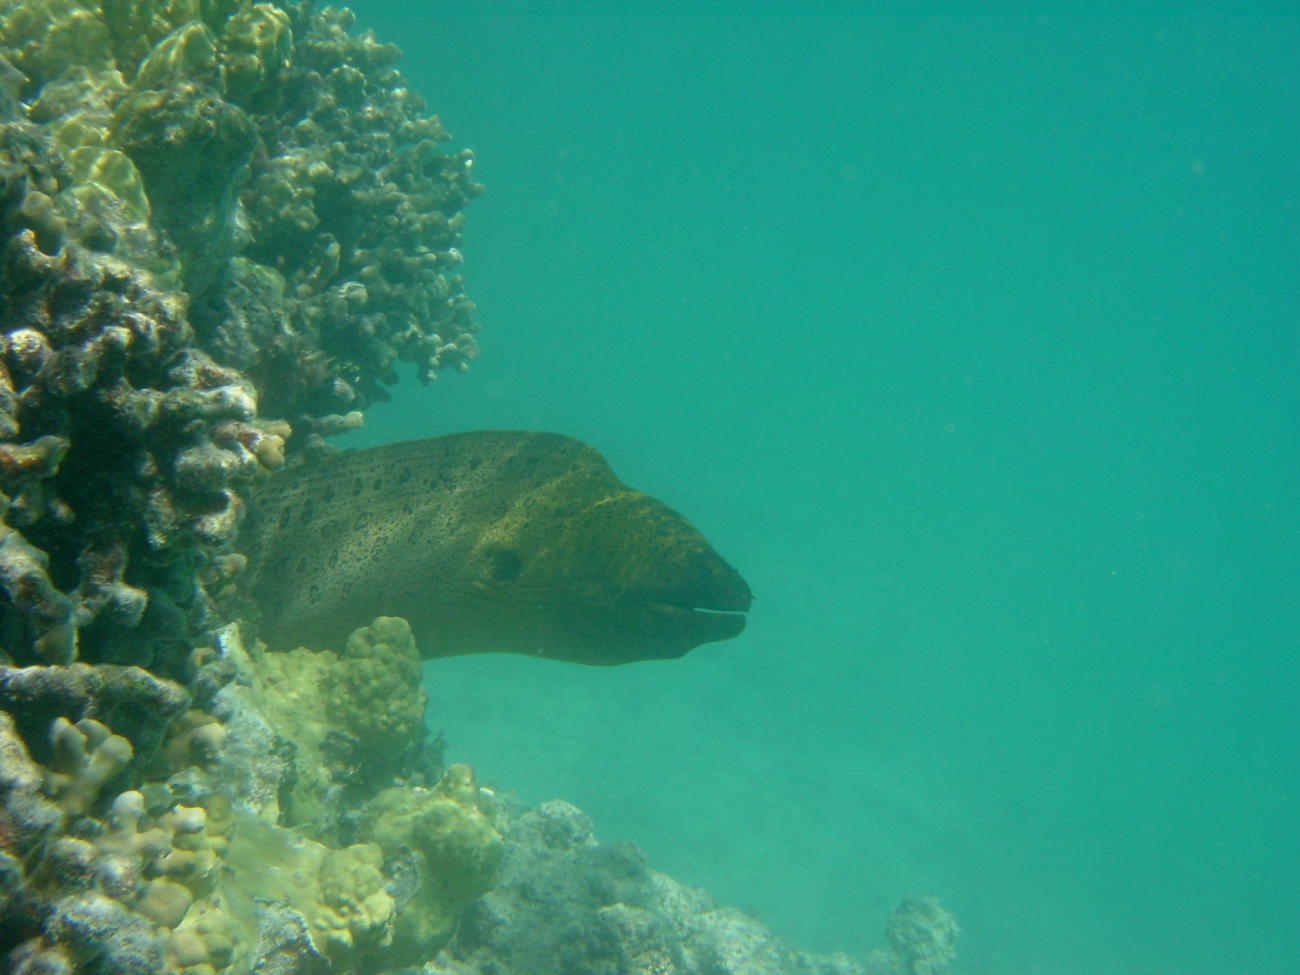 Large moray eel (Gymnothorax sp